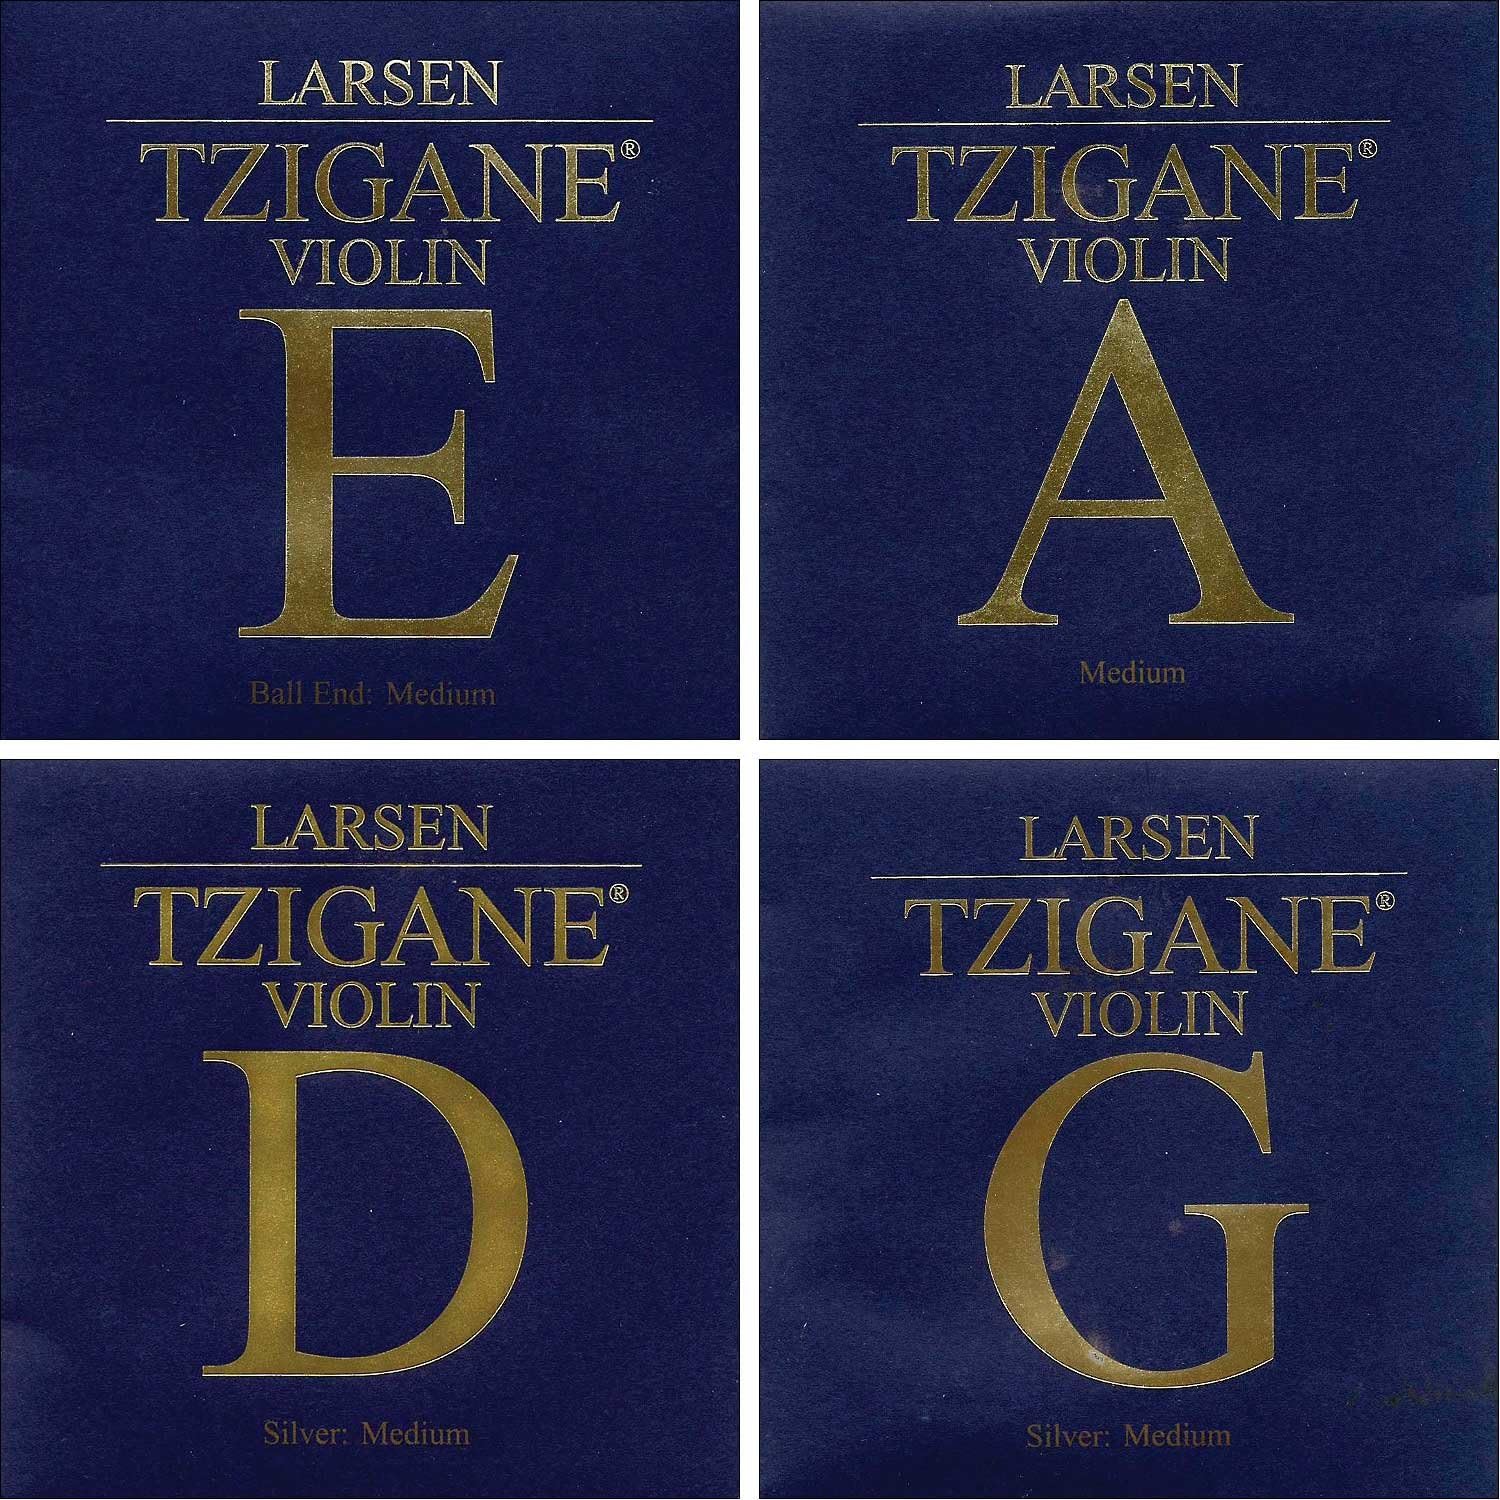 Larsen Tzigane Violin String Set- Medium (ball end)